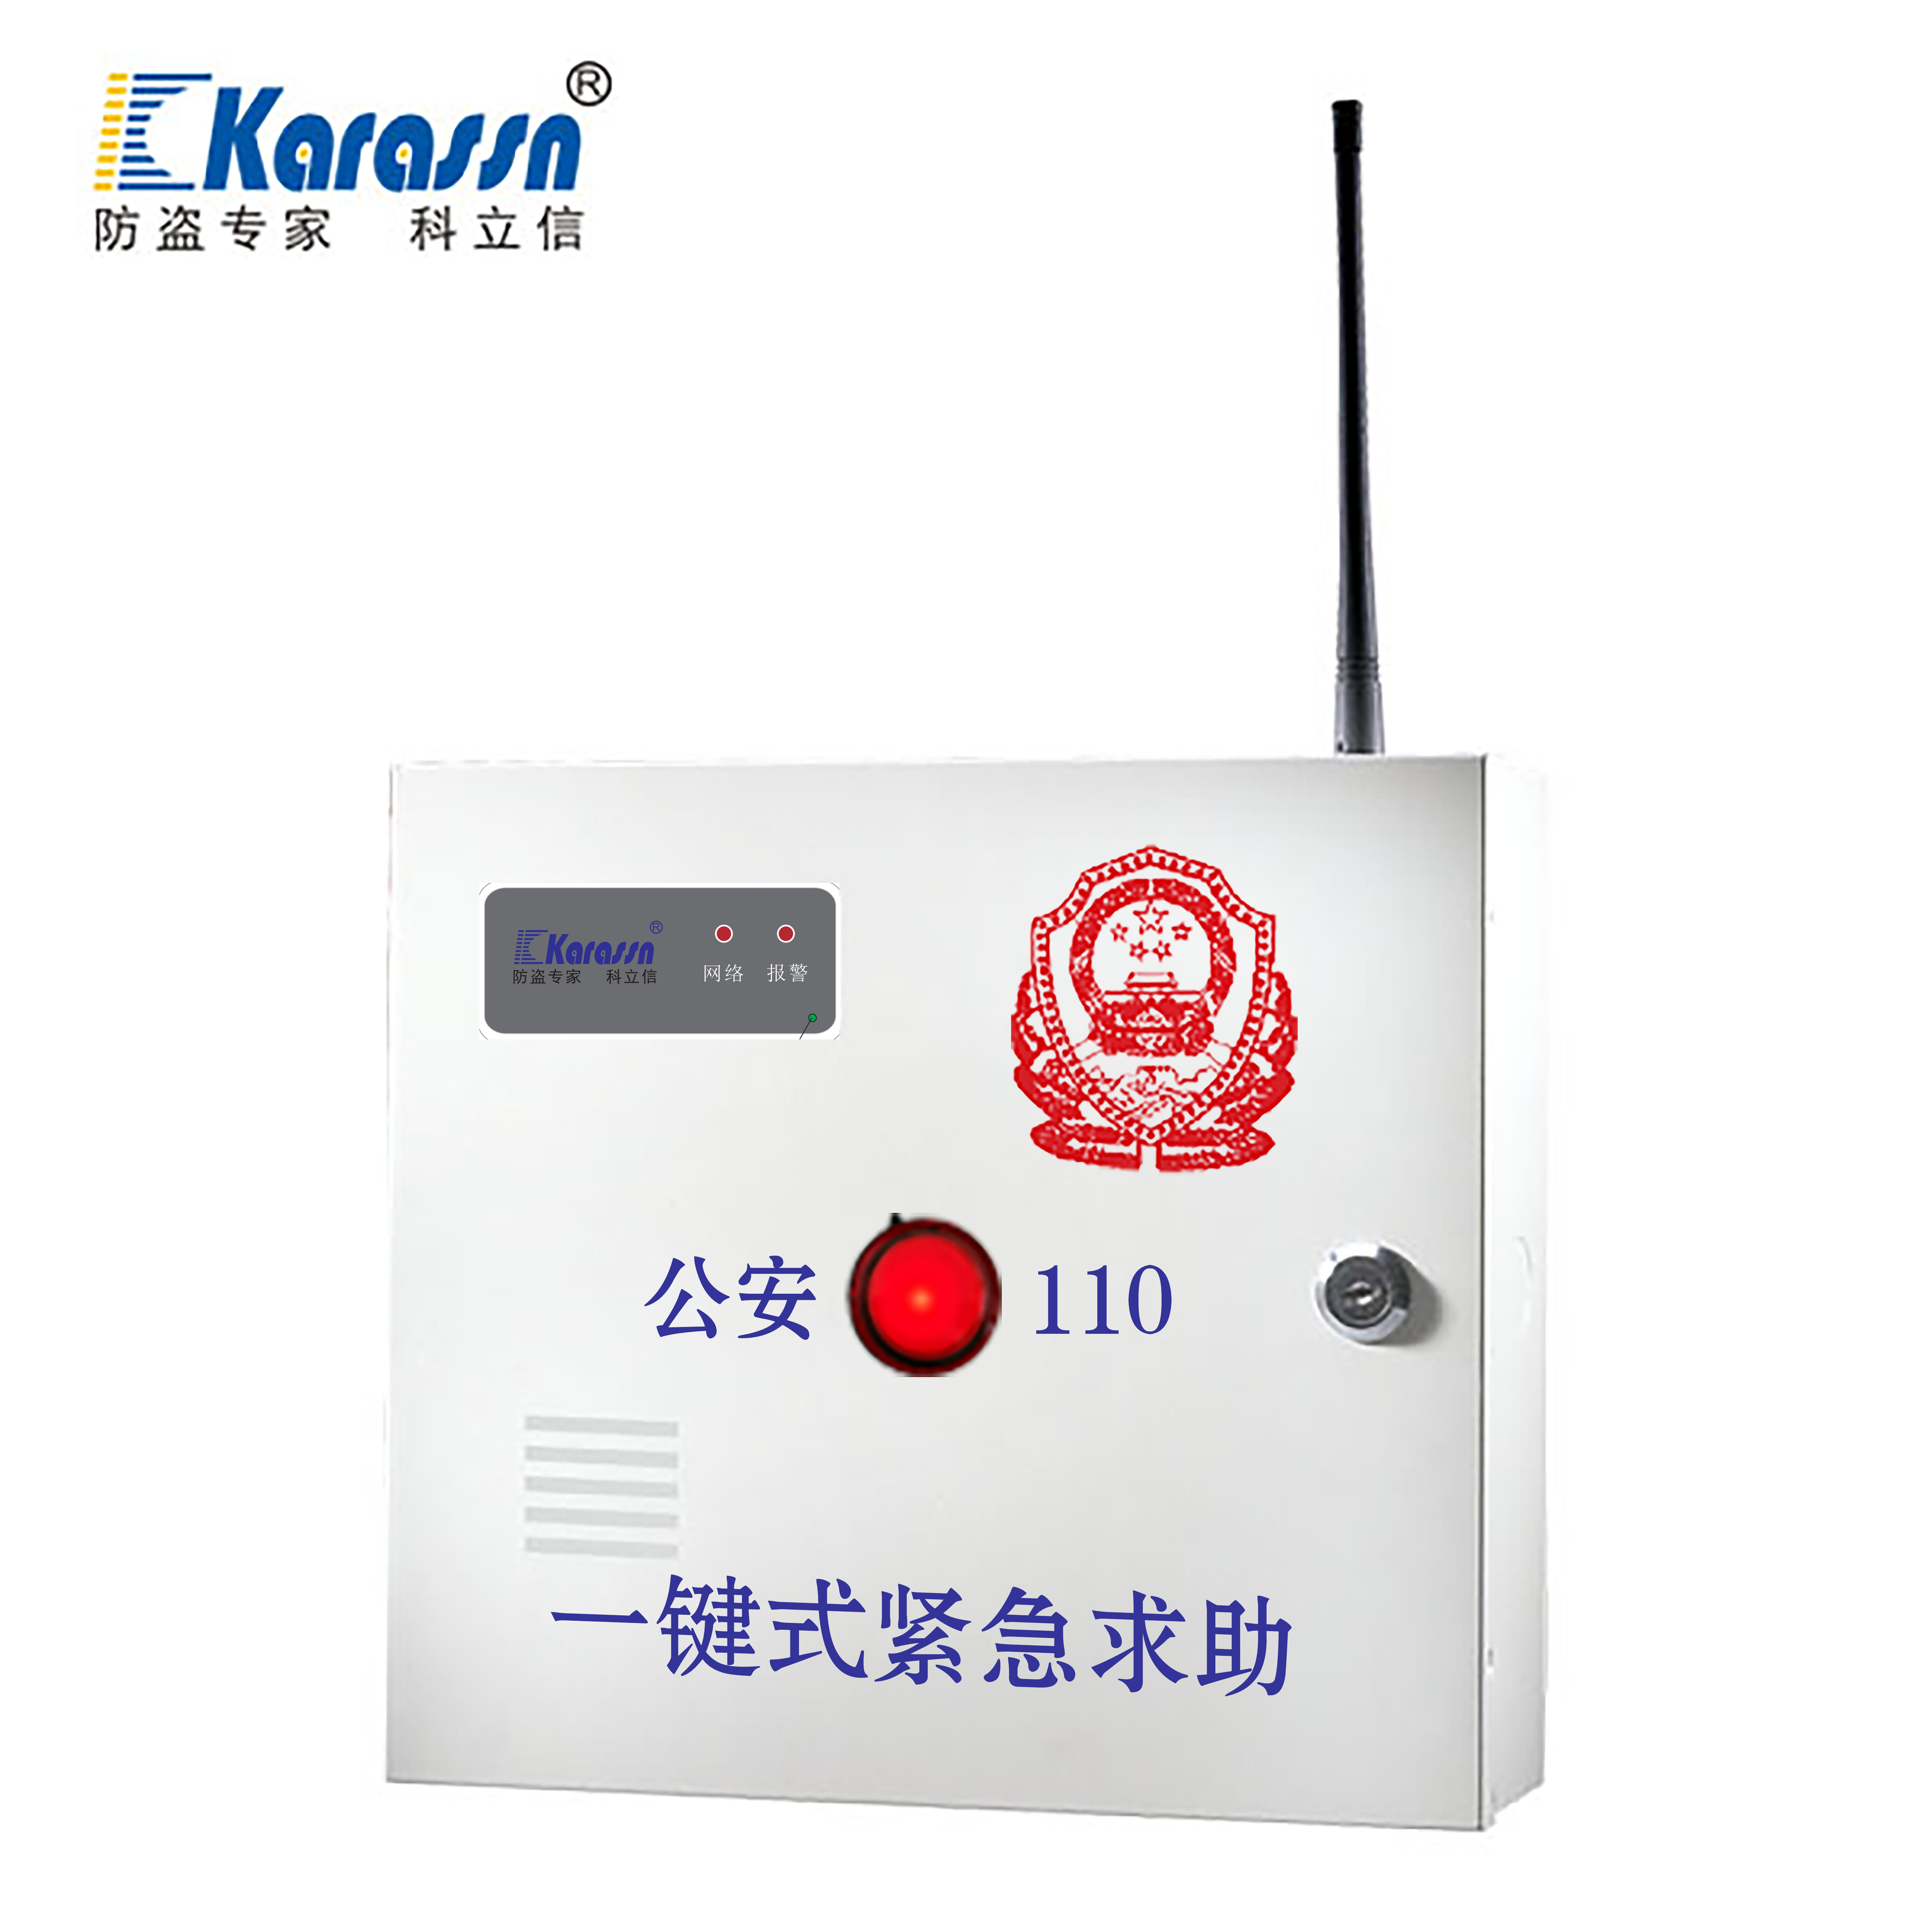 KB-A1799T1 一键紧急求助报警控制器